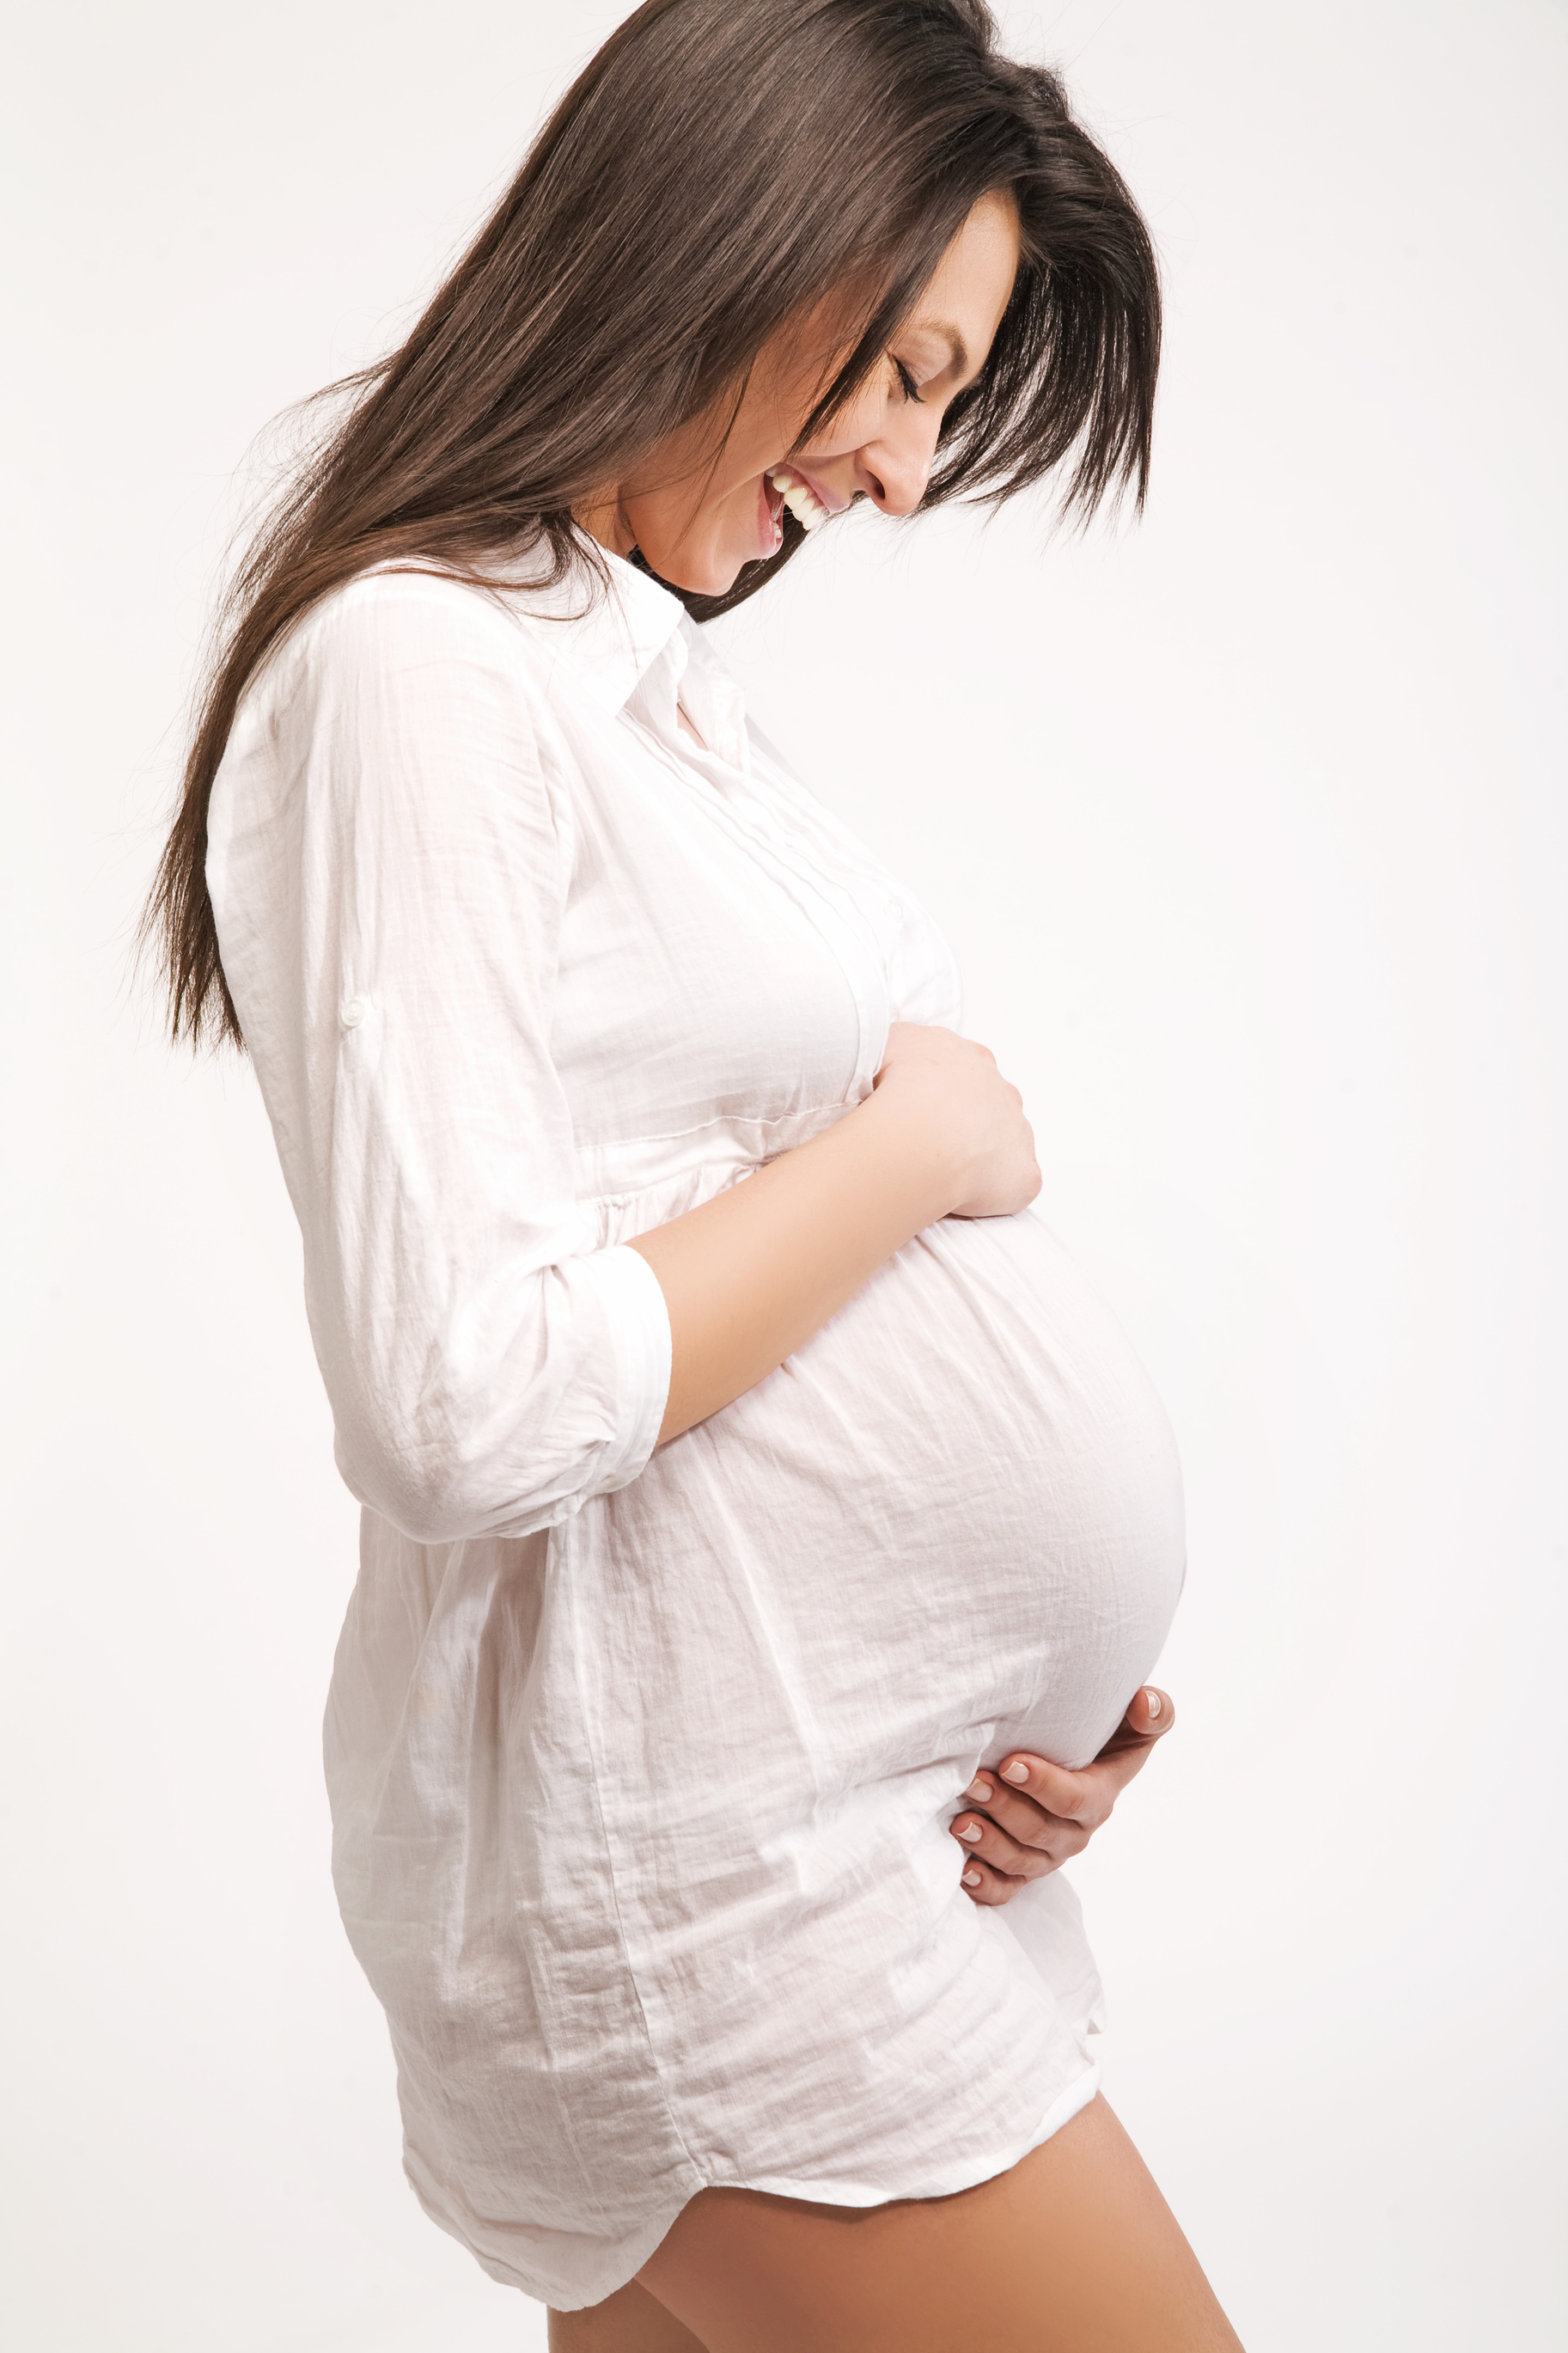 Ե՞րբ է կնոջ օրգանիզմը պատրաստ հղիությանը